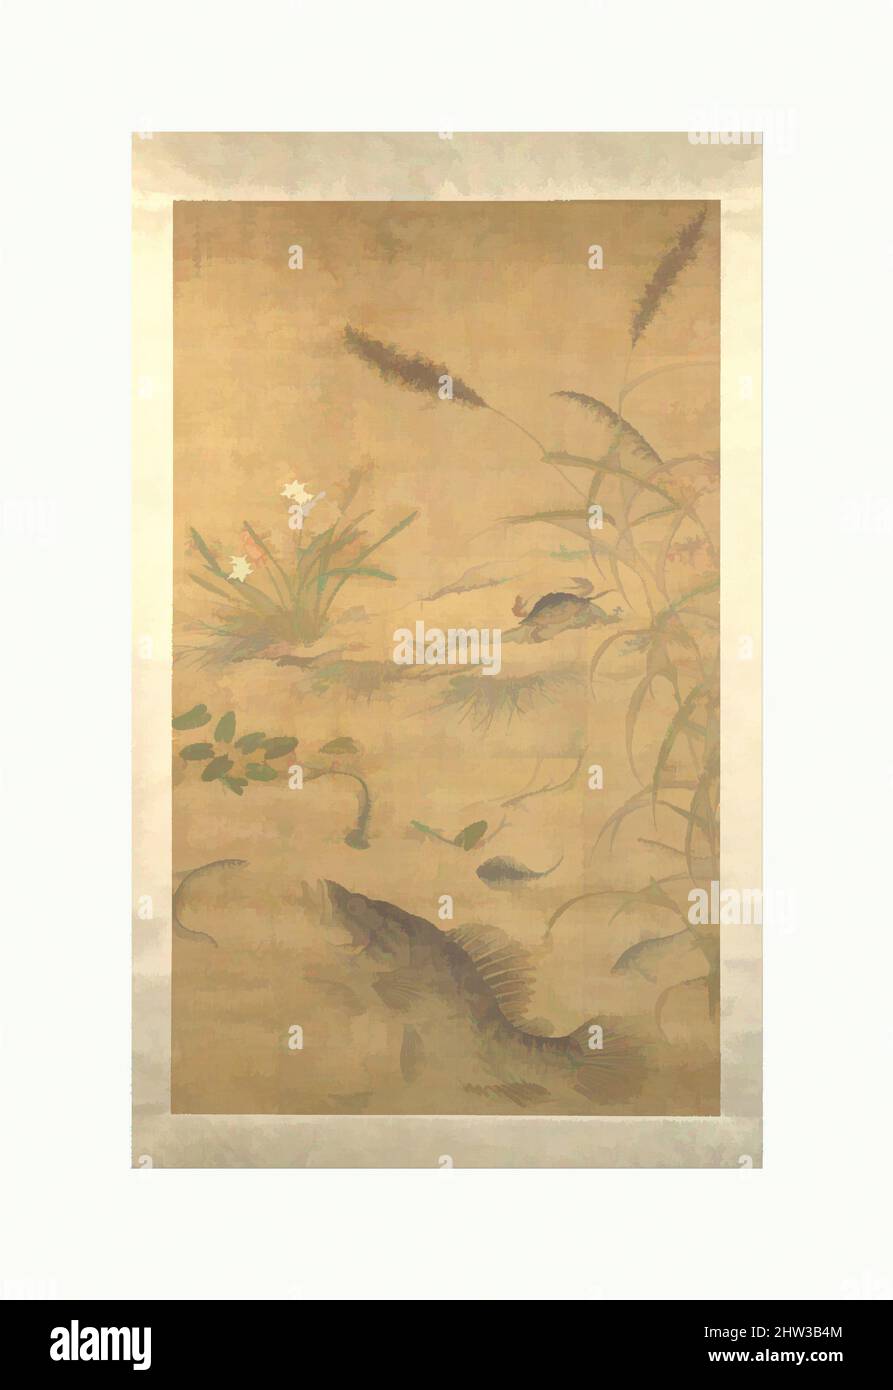 Art inspiré par 一鱖禾蟹圖, fleurs, poissons et crabes, dynastie Ming (1368–1644), Mi-16th siècle, Chine, rouleau suspendu; encre et couleur sur soie, image: 69 1/4 × 49 1/2 po. (175,9 × 125,7 cm), peintures, Liu Jie (chinois, actif au milieu du 16th siècle), cette peinture par le maître de cour Liu Jie, œuvres classiques modernisées par Artotop avec une touche de modernité. Formes, couleur et valeur, impact visuel accrocheur sur l'art émotions par la liberté d'œuvres d'art d'une manière contemporaine. Un message intemporel qui cherche une nouvelle direction créative. Artistes qui se tournent vers le support numérique et créent le NFT Artotop Banque D'Images